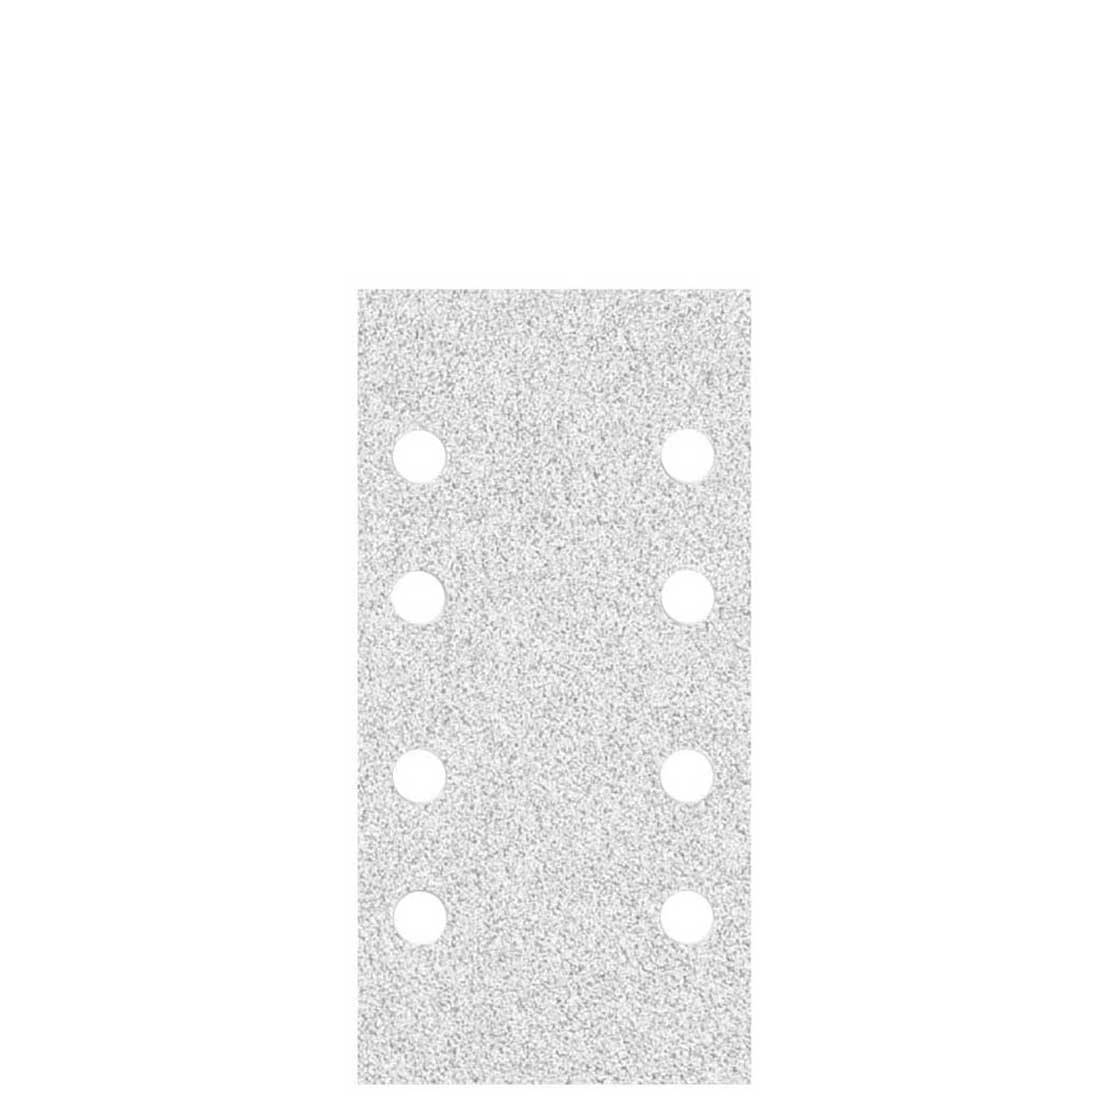 Carte abrasive velcrate MioTools per levigatrici orbitali, G40–400, 180 x 93 mm / 8 fori / corindone normale con stearato